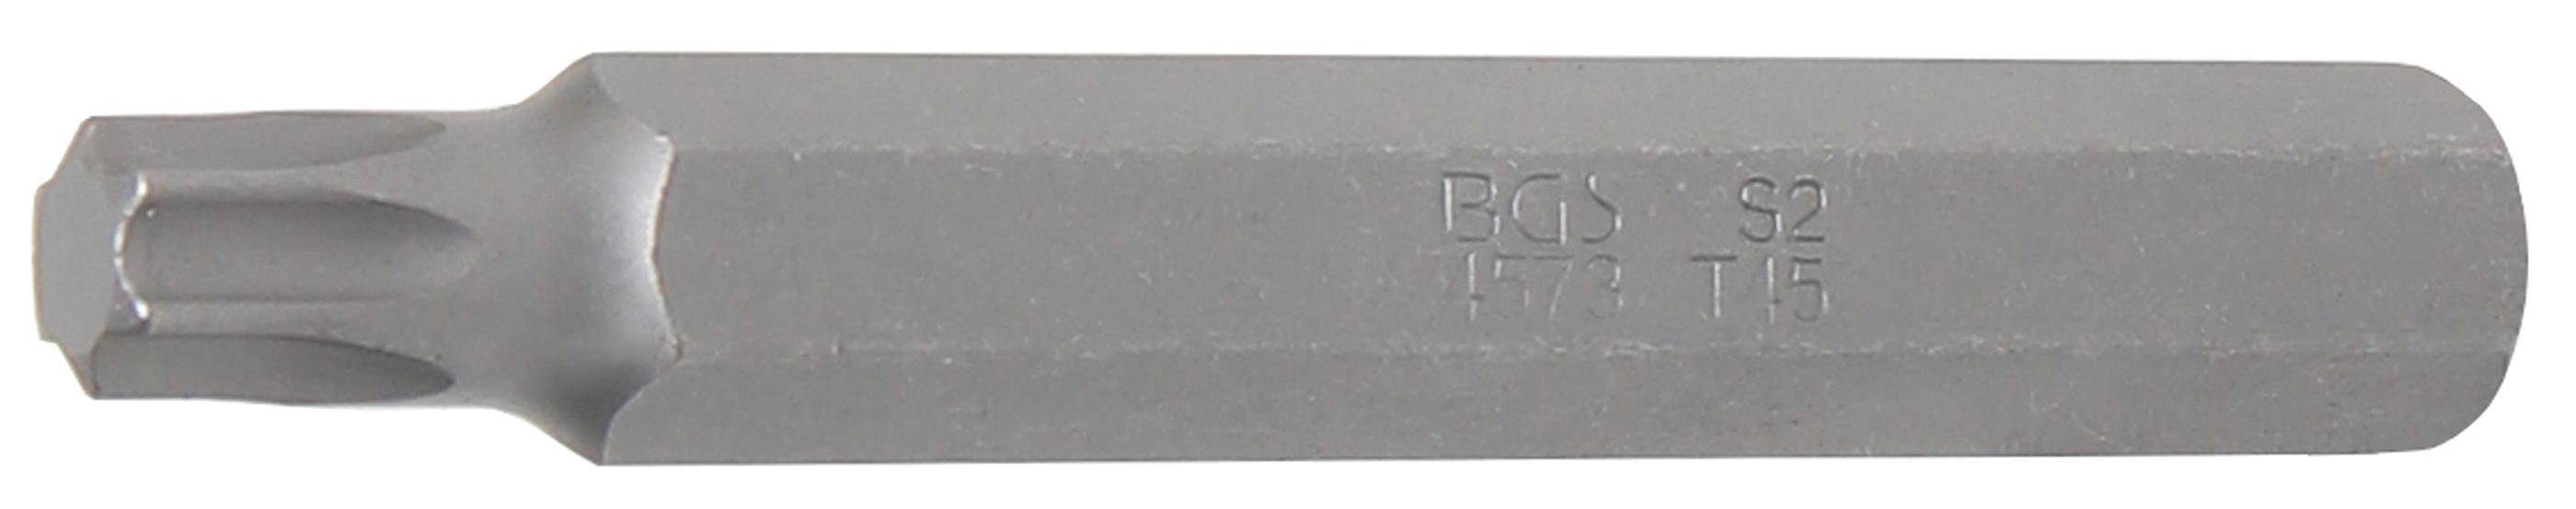 BGS technic Bit-Schraubendreher Bit, Länge 75 mm T-Profil (3/8), 10 (für Torx) Antrieb mm, T45 Außensechskant